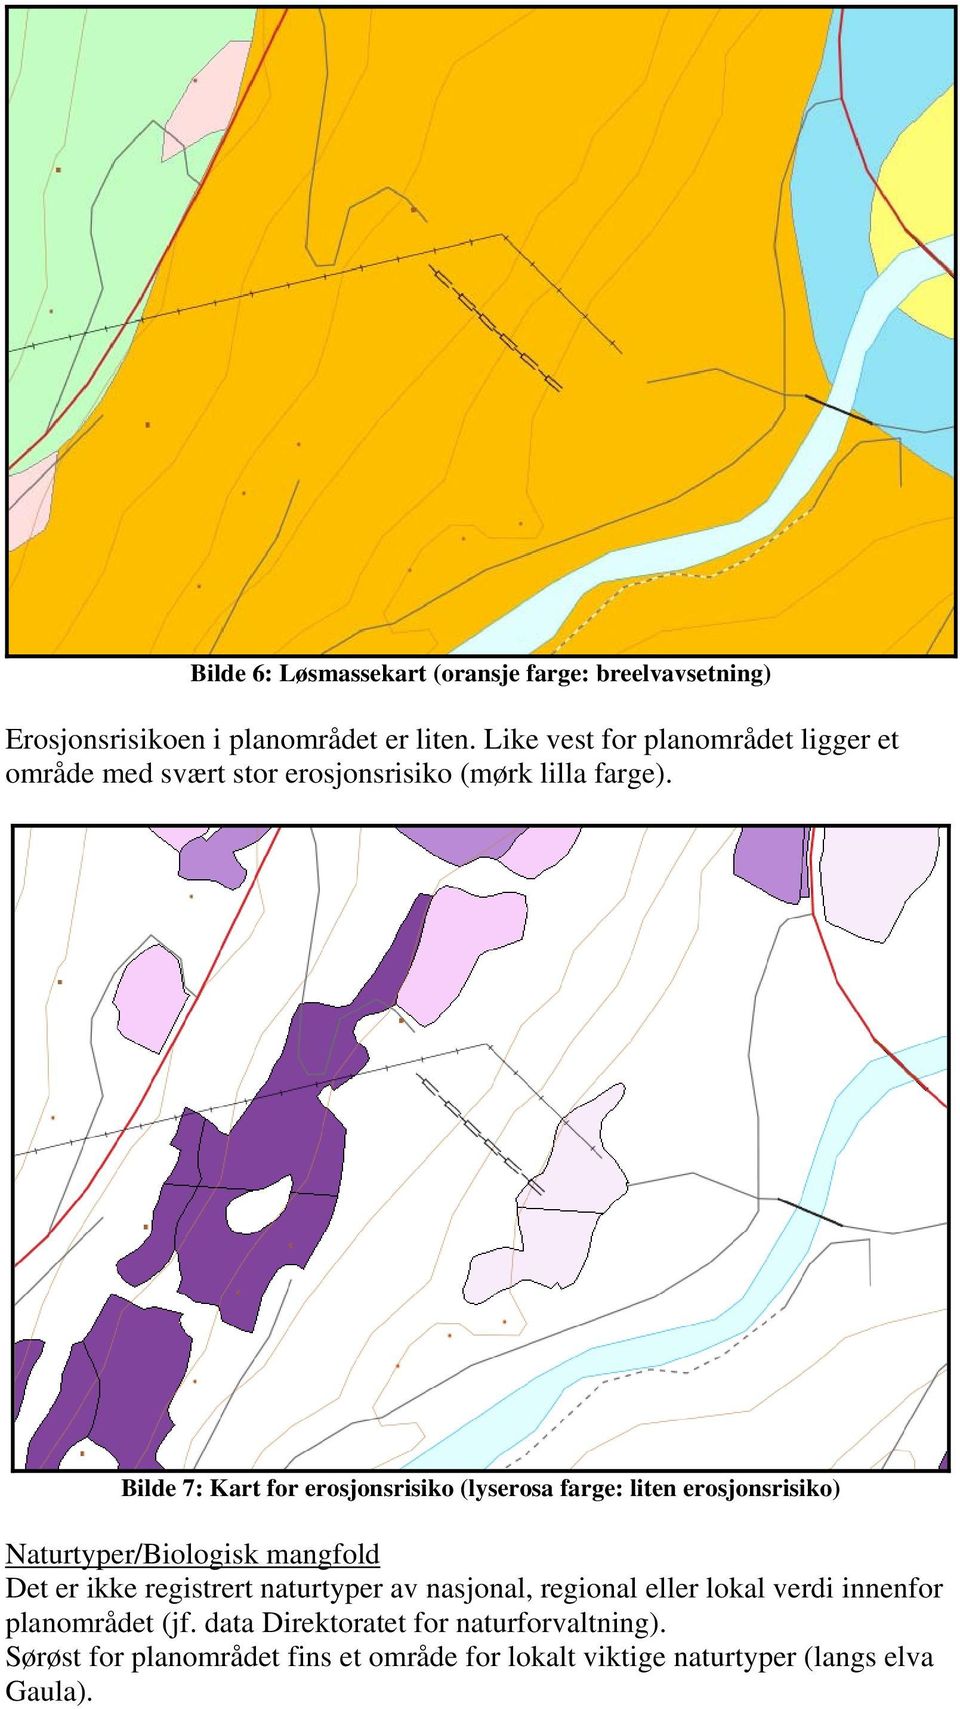 Bilde 7: Kart for erosjonsrisiko (lyserosa farge: liten erosjonsrisiko) Naturtyper/Biologisk mangfold Det er ikke registrert